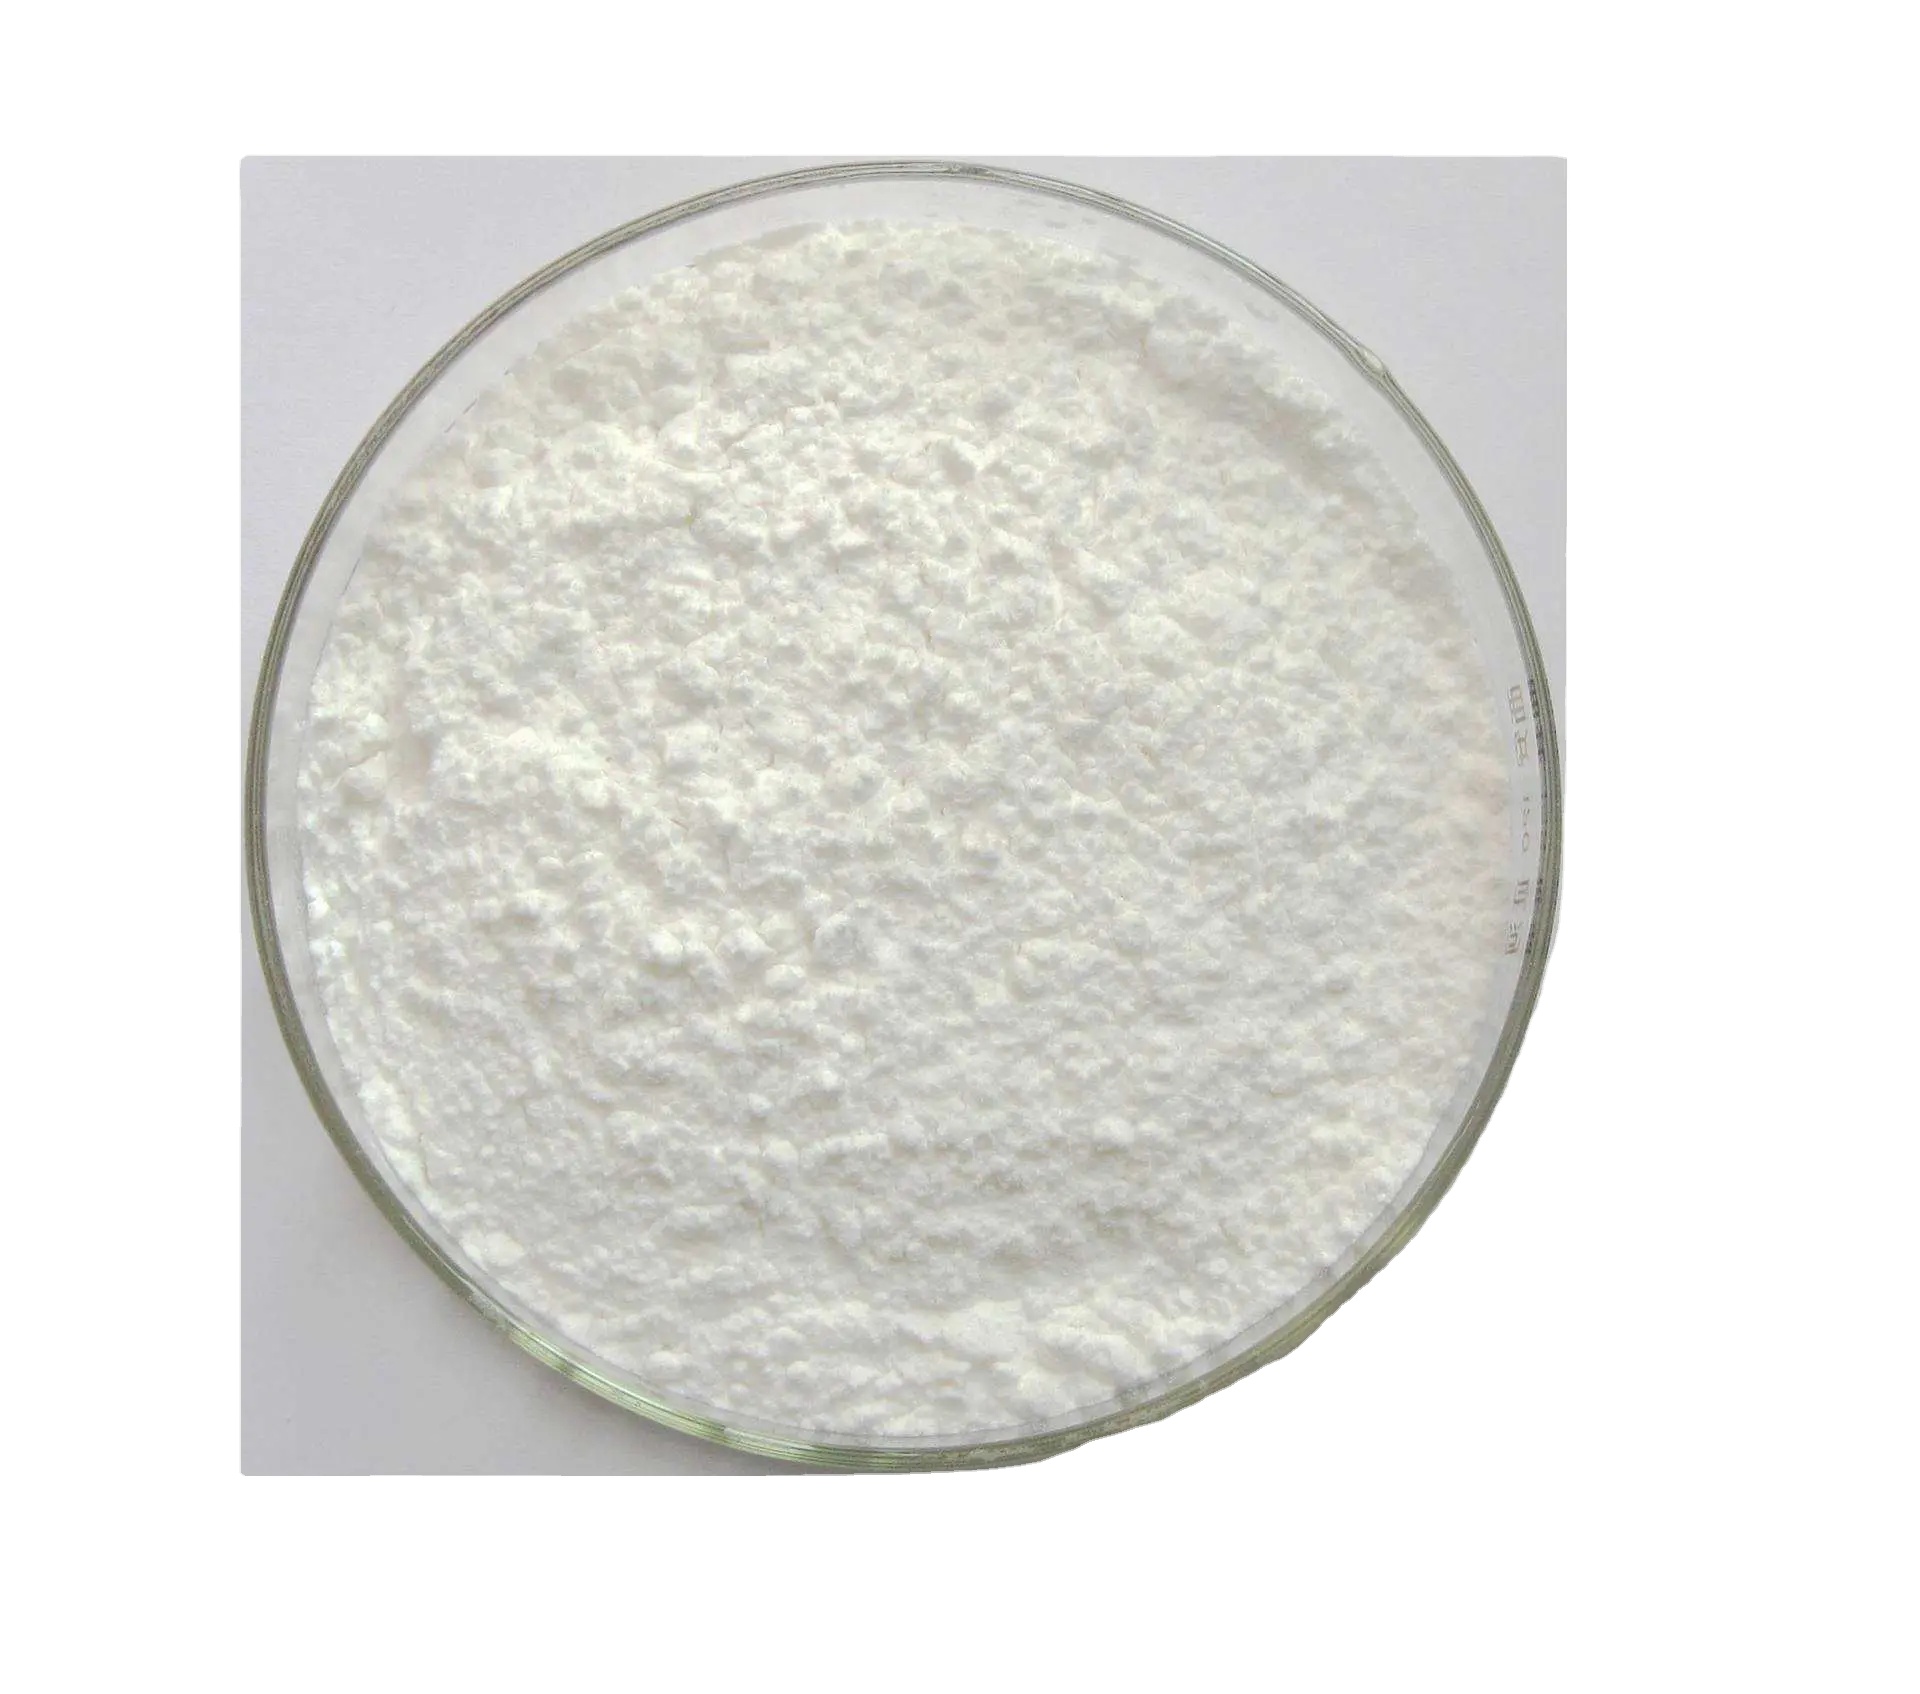 Kaufen Weißmacher 4,4''-Bis(chlormethyl)-1,1''-biphenyl Cas1667-10-3;Weißmacher 4,4''-Bis(chlormethyl)-1,1''-biphenyl Cas1667-10-3 Preis;Weißmacher 4,4''-Bis(chlormethyl)-1,1''-biphenyl Cas1667-10-3 Marken;Weißmacher 4,4''-Bis(chlormethyl)-1,1''-biphenyl Cas1667-10-3 Hersteller;Weißmacher 4,4''-Bis(chlormethyl)-1,1''-biphenyl Cas1667-10-3 Zitat;Weißmacher 4,4''-Bis(chlormethyl)-1,1''-biphenyl Cas1667-10-3 Unternehmen